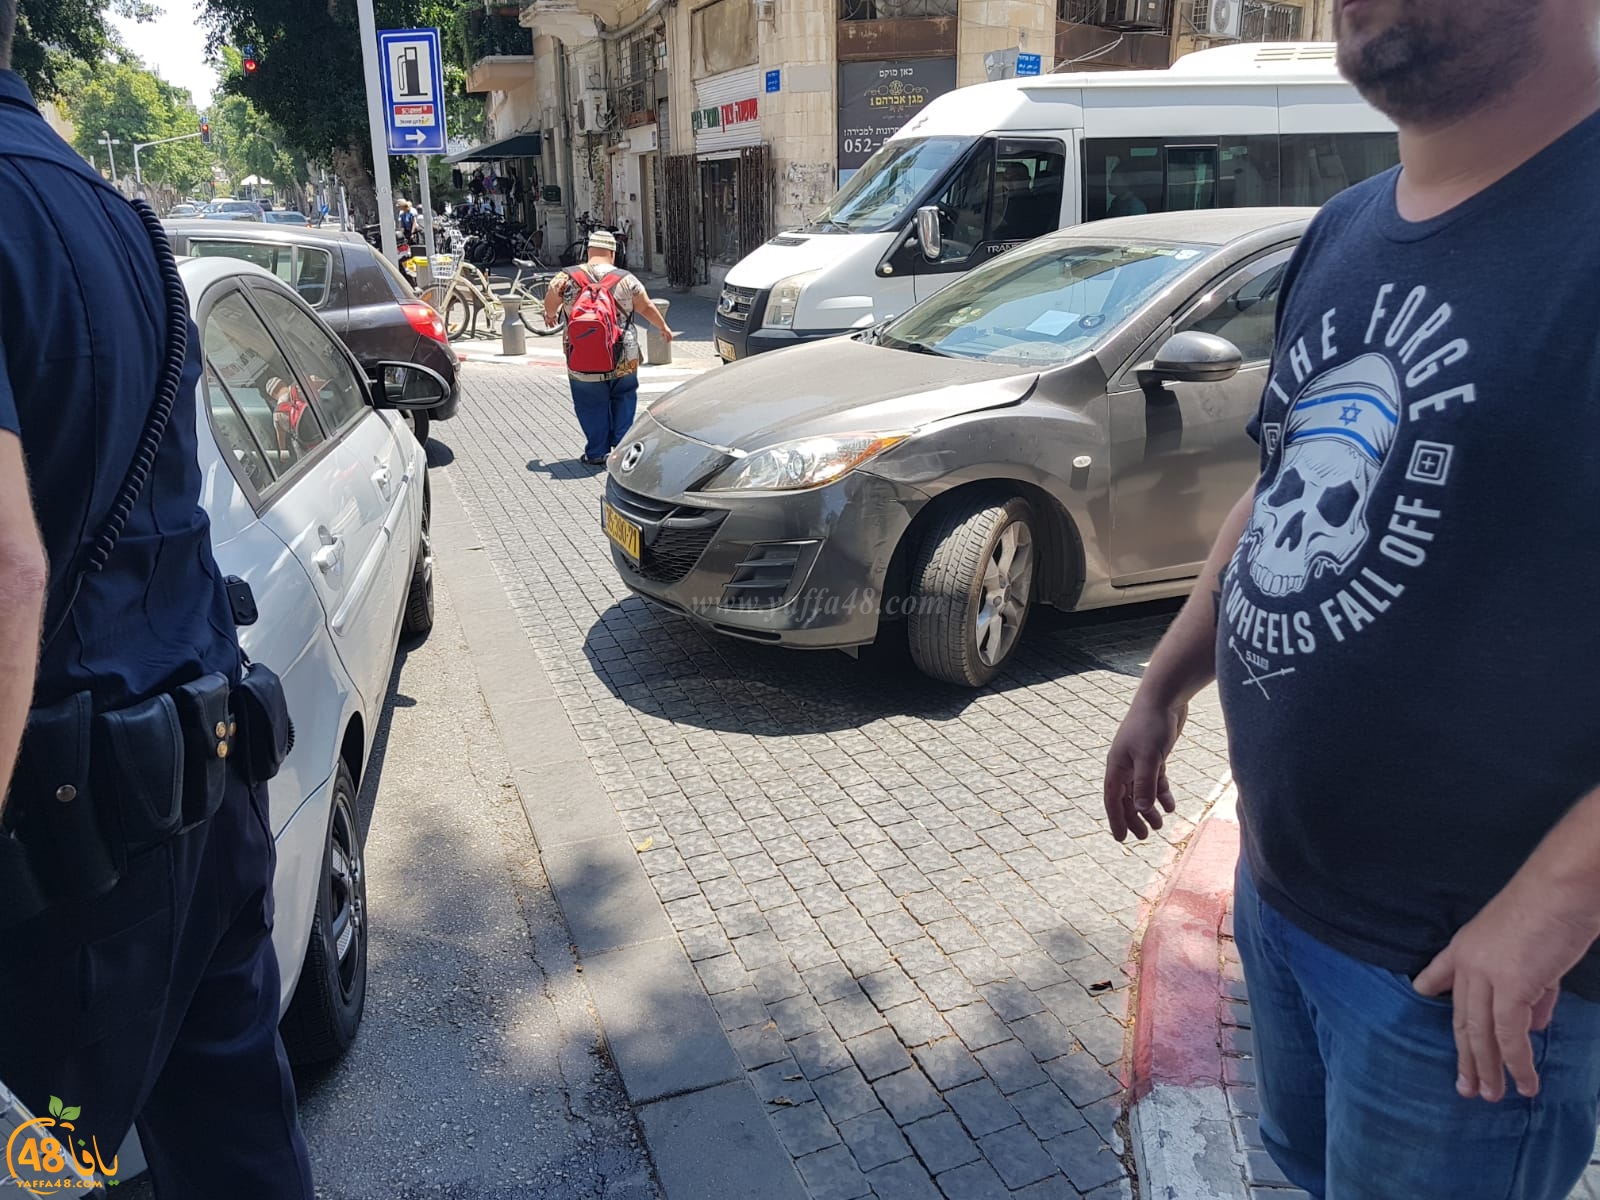  بالصور: أضرار اثر حادث طرق بين مركبتين في يافا 